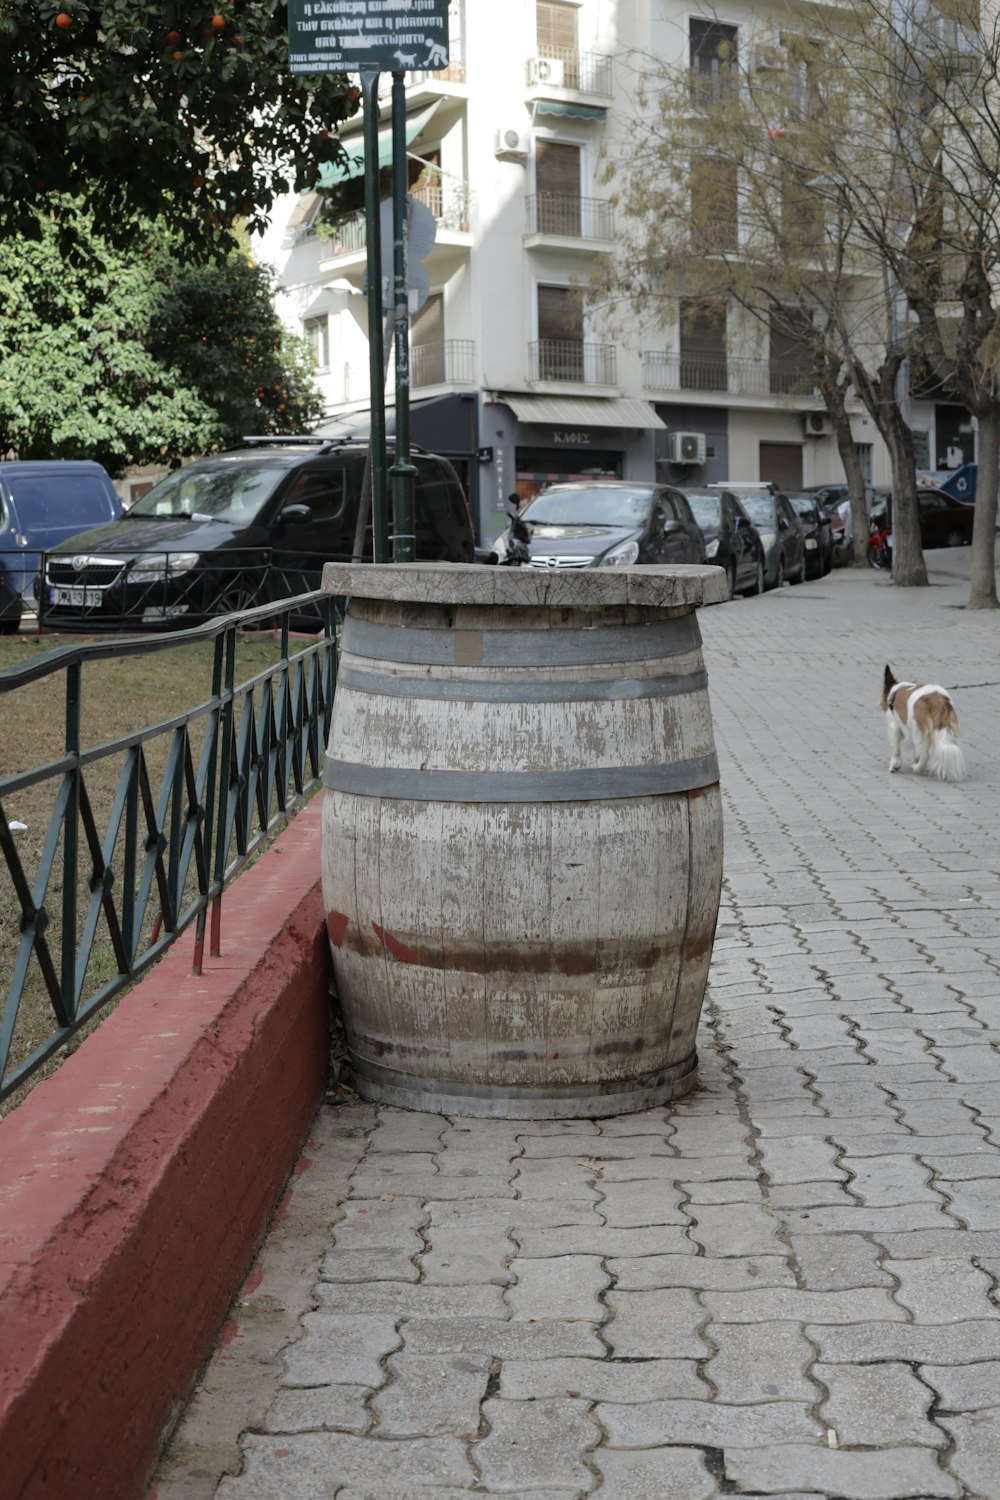 a dog walking on a sidewalk next to a barrel